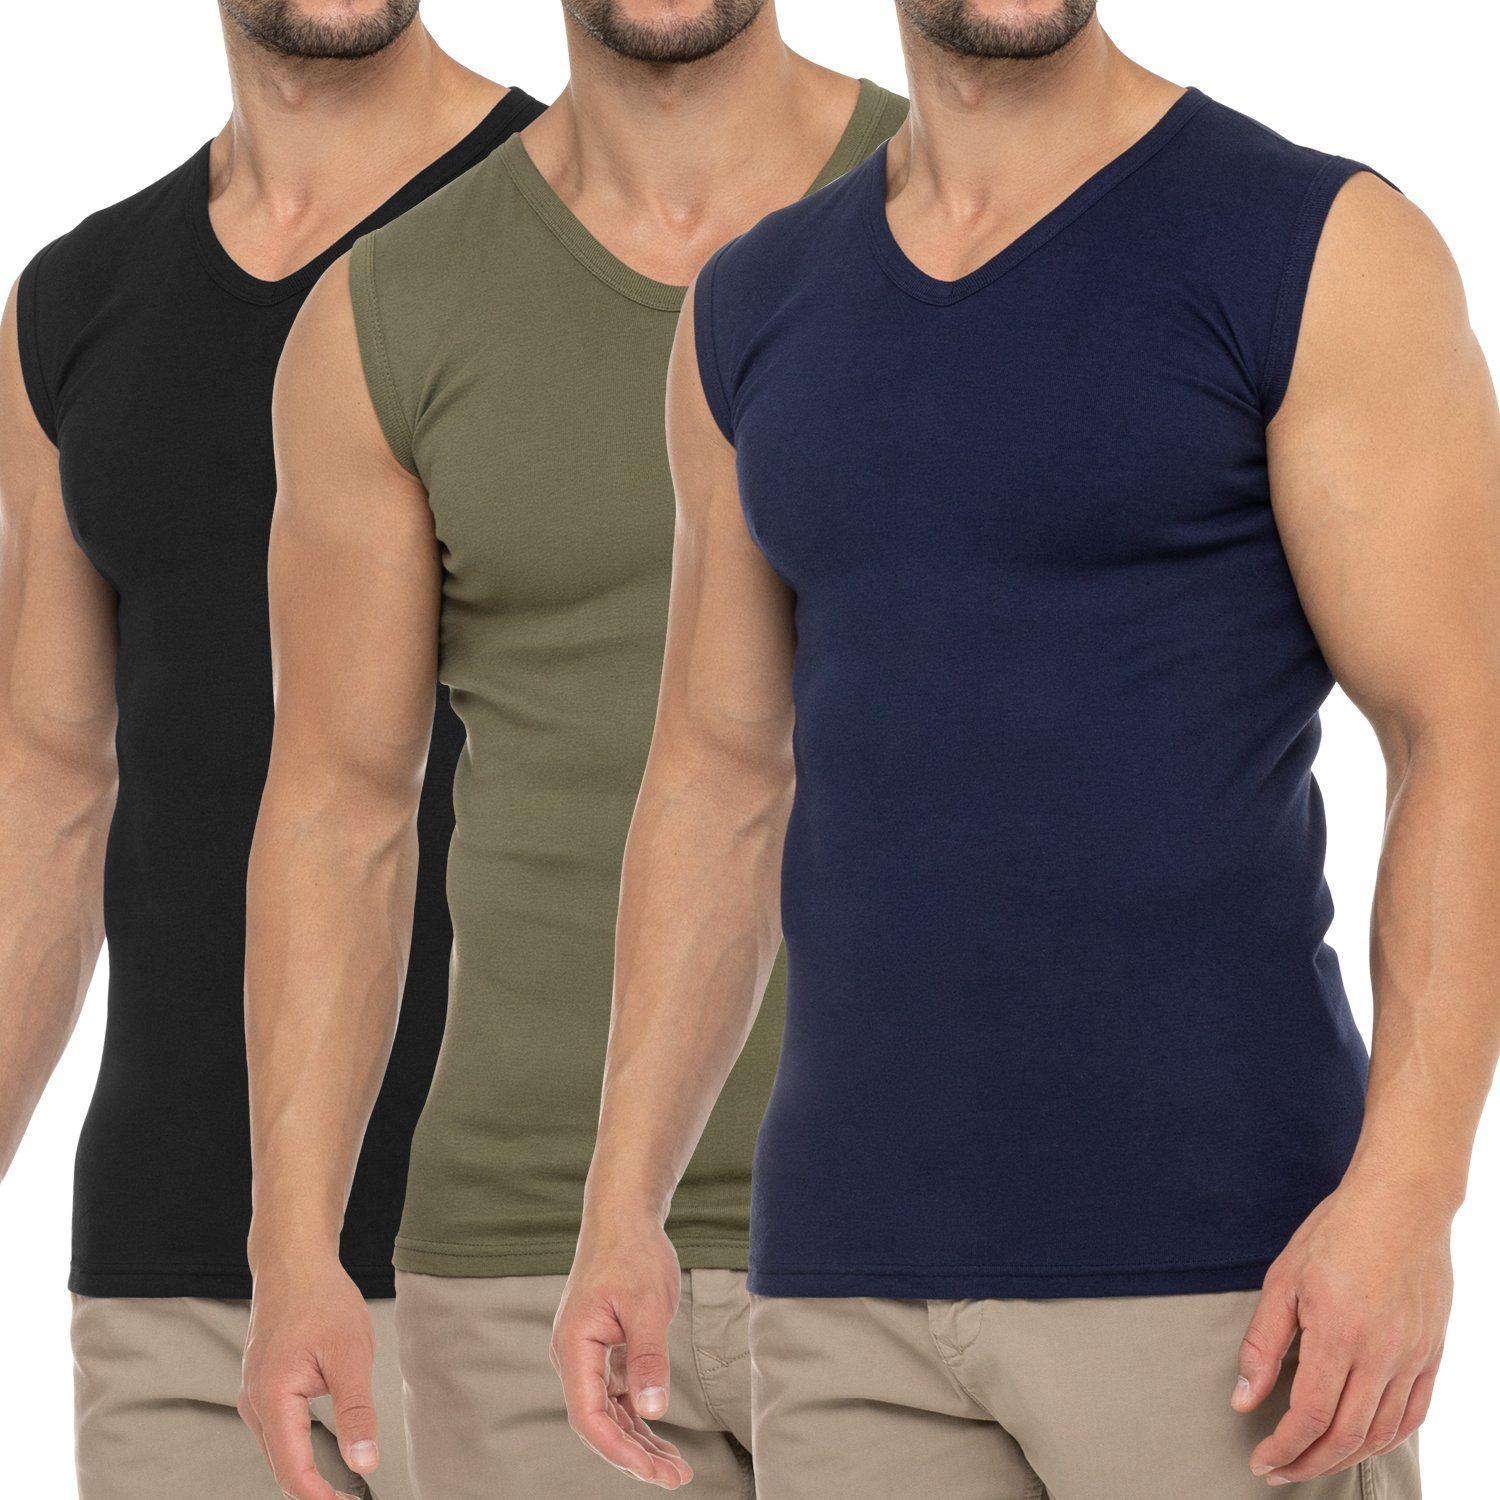 celodoro Unterhemd Herren Business Muskelshirt V-Neck (3er Pack) Muscle Shirt Marine / Schwarz / Olive